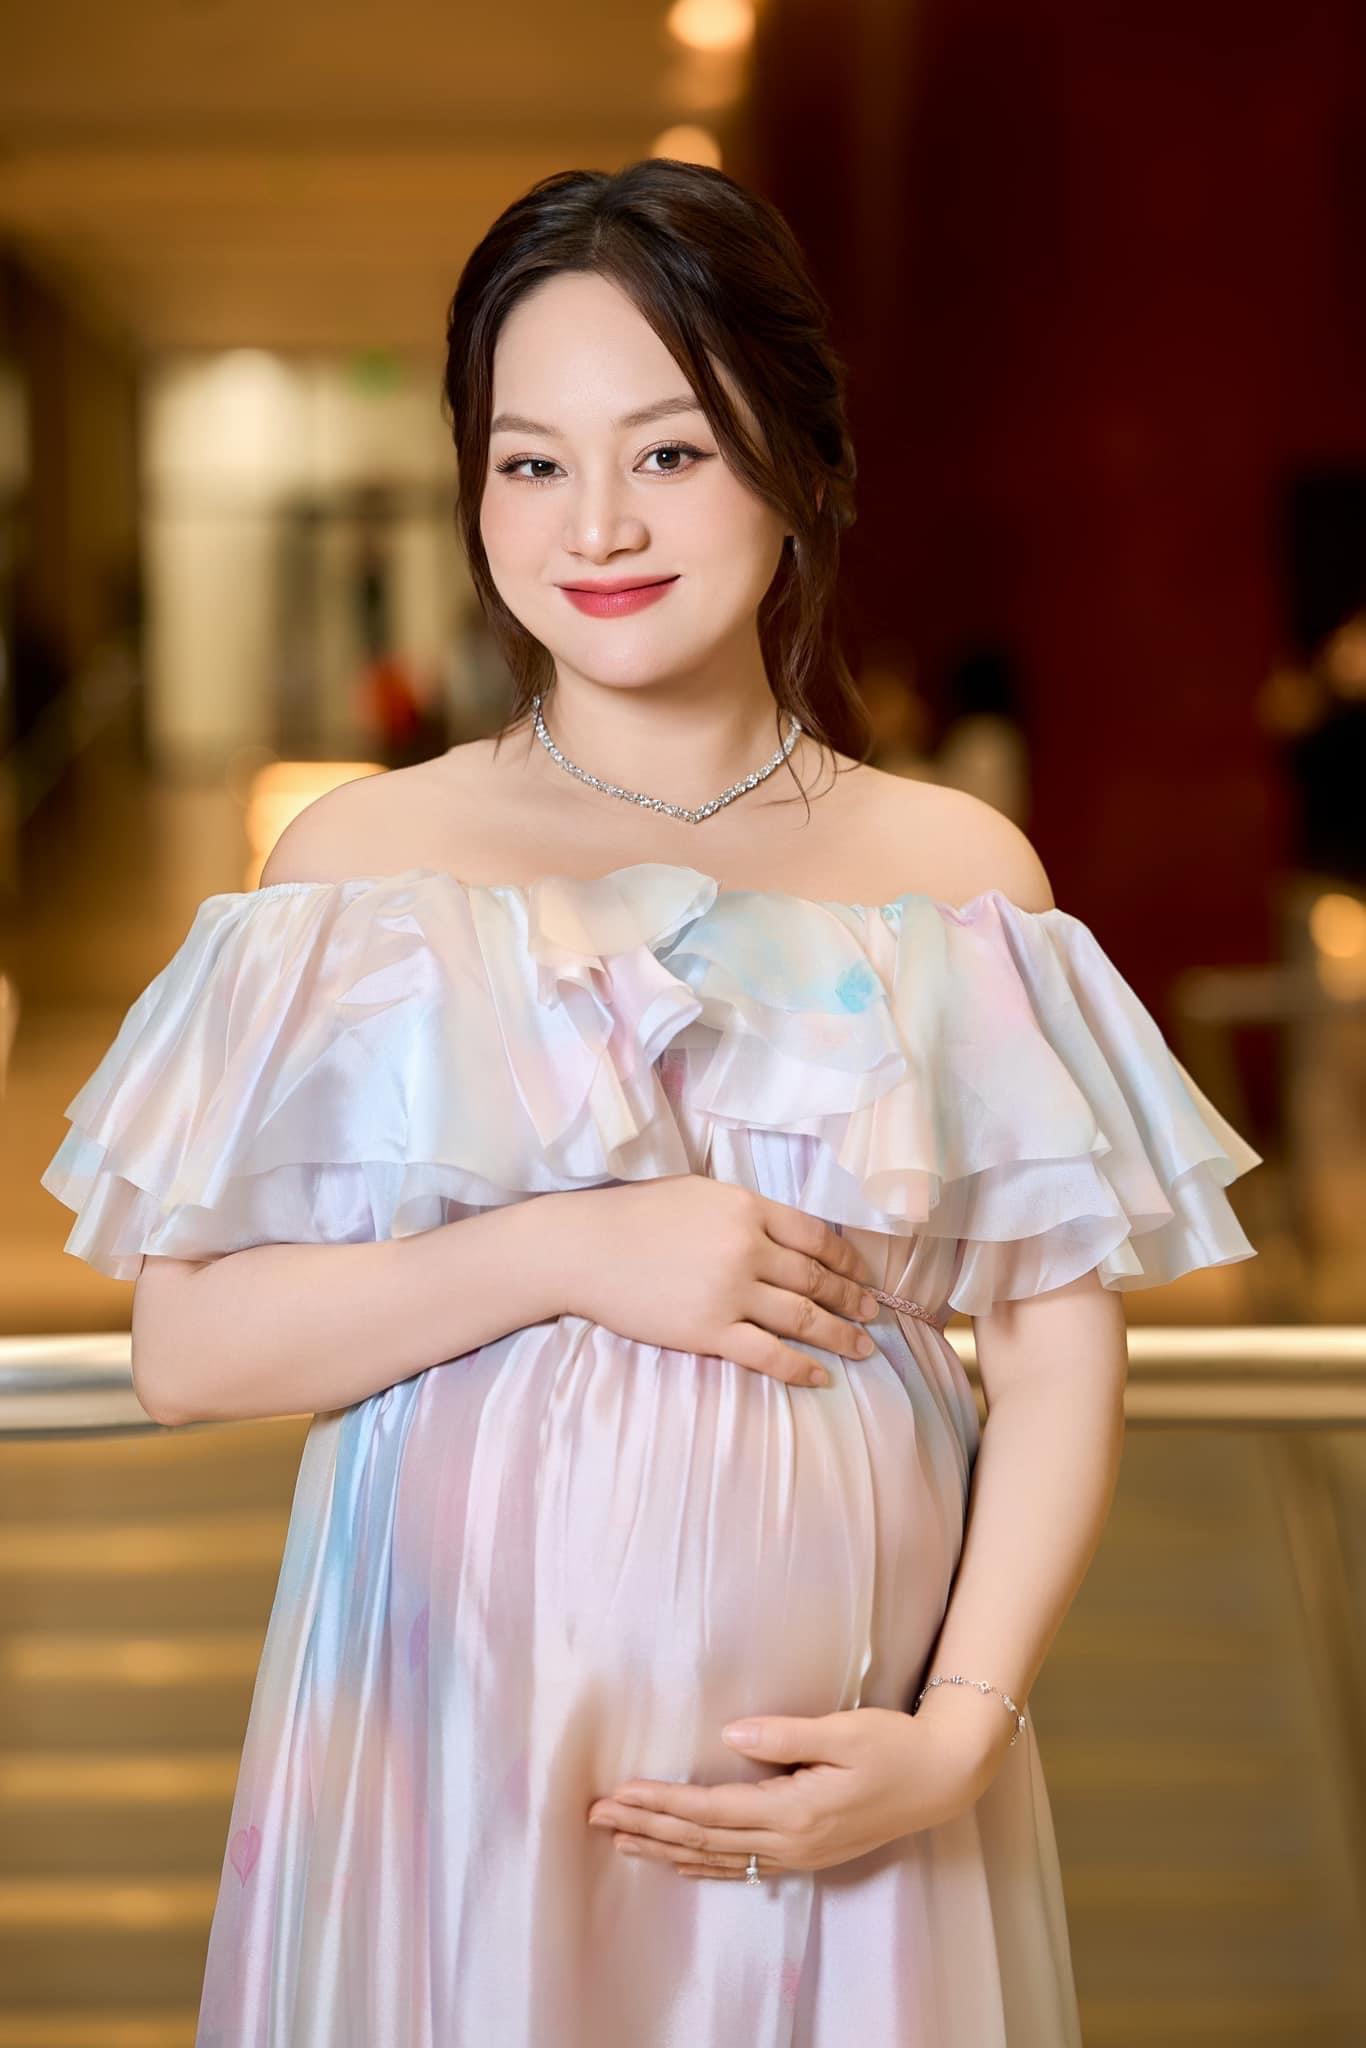 Diễn viên Lan Phương hạnh phúc thông báo đã sinh con thứ 2, tiết lộ điều đặc biệt hiếm khi xảy ra- Ảnh 2.